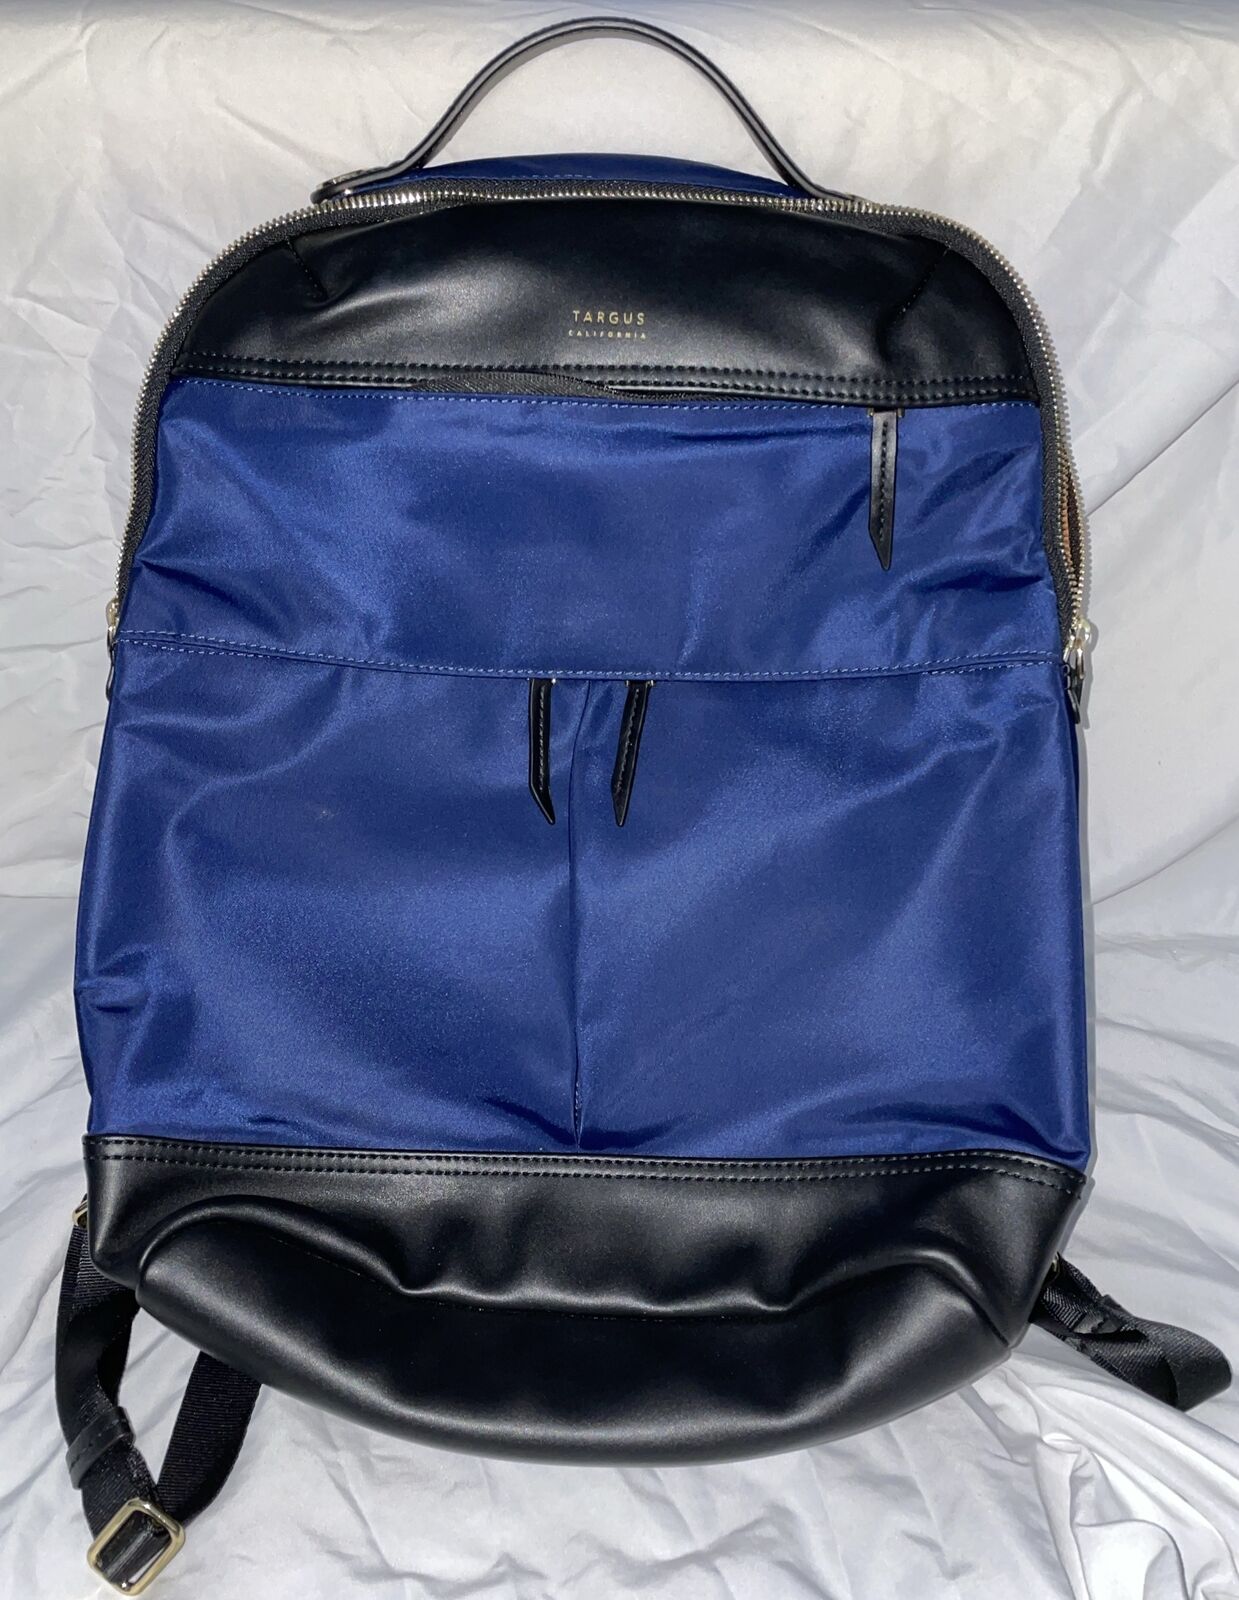 Targus California Labtop Backpack Blue And Black Orange Inside 7 Pockets Total